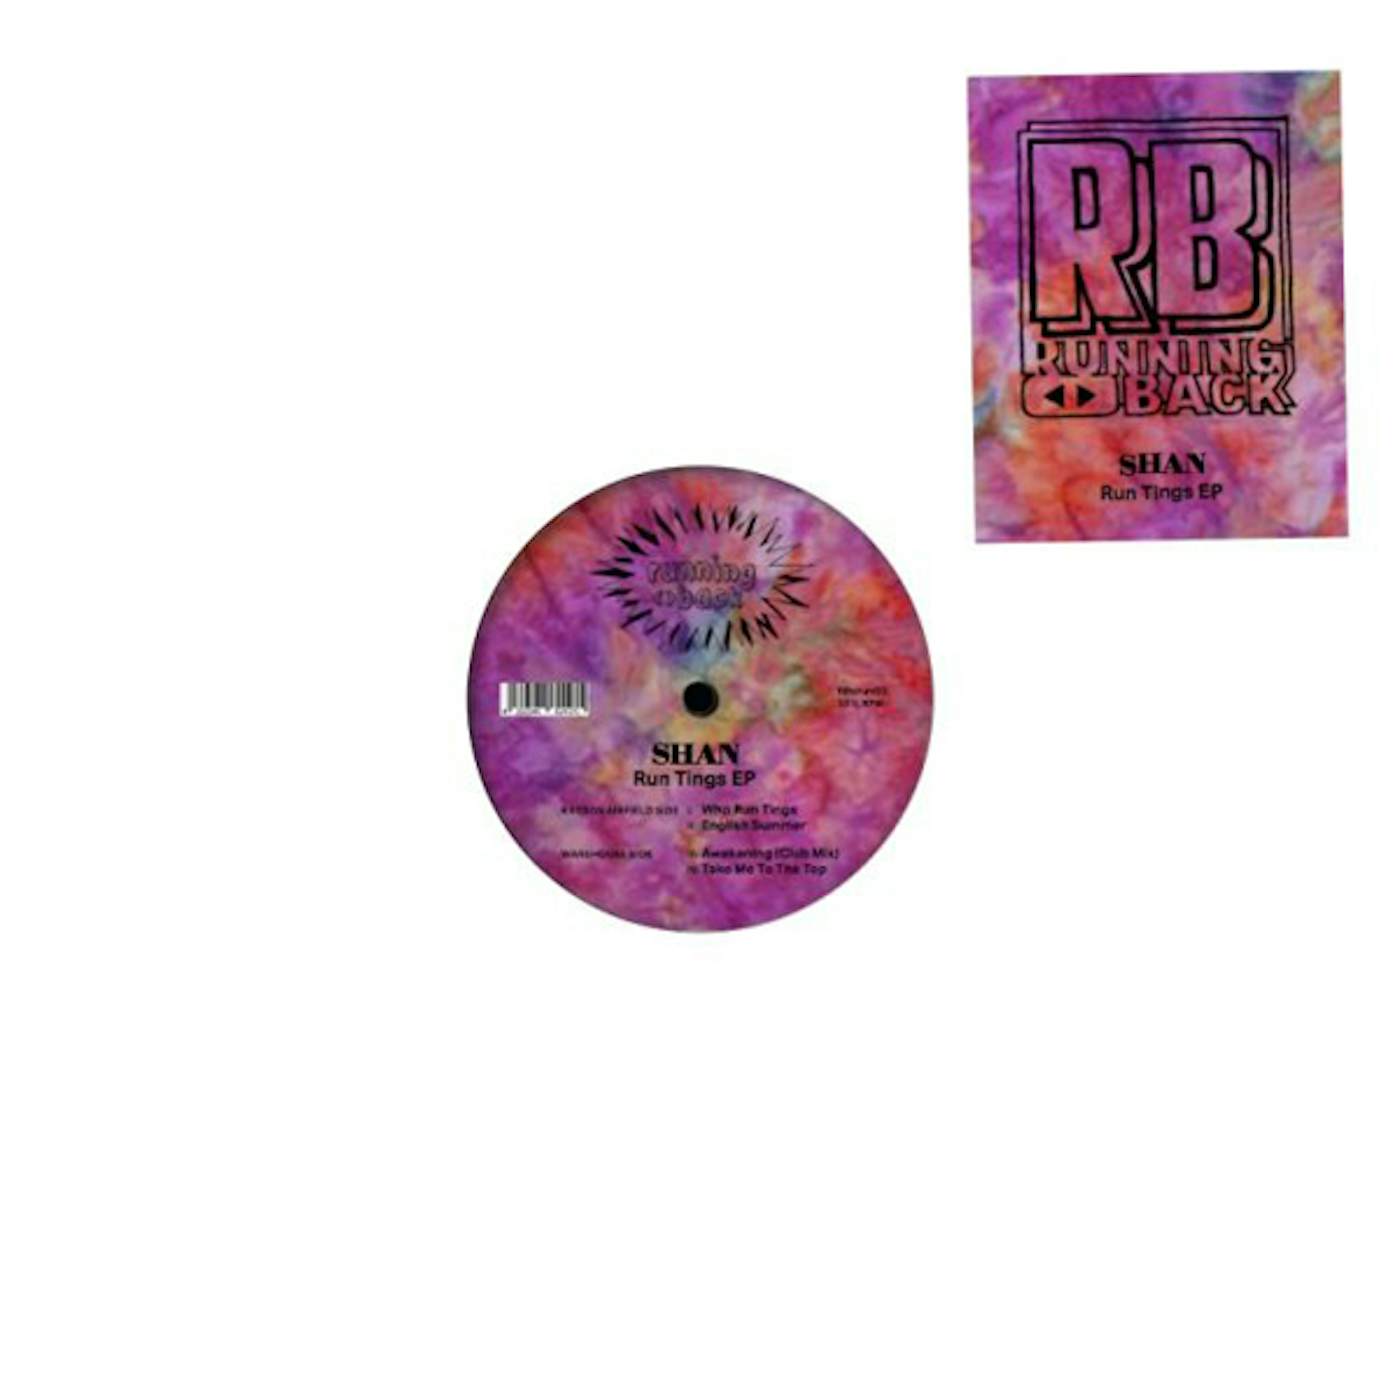 Shan RUN TINGS Vinyl Record